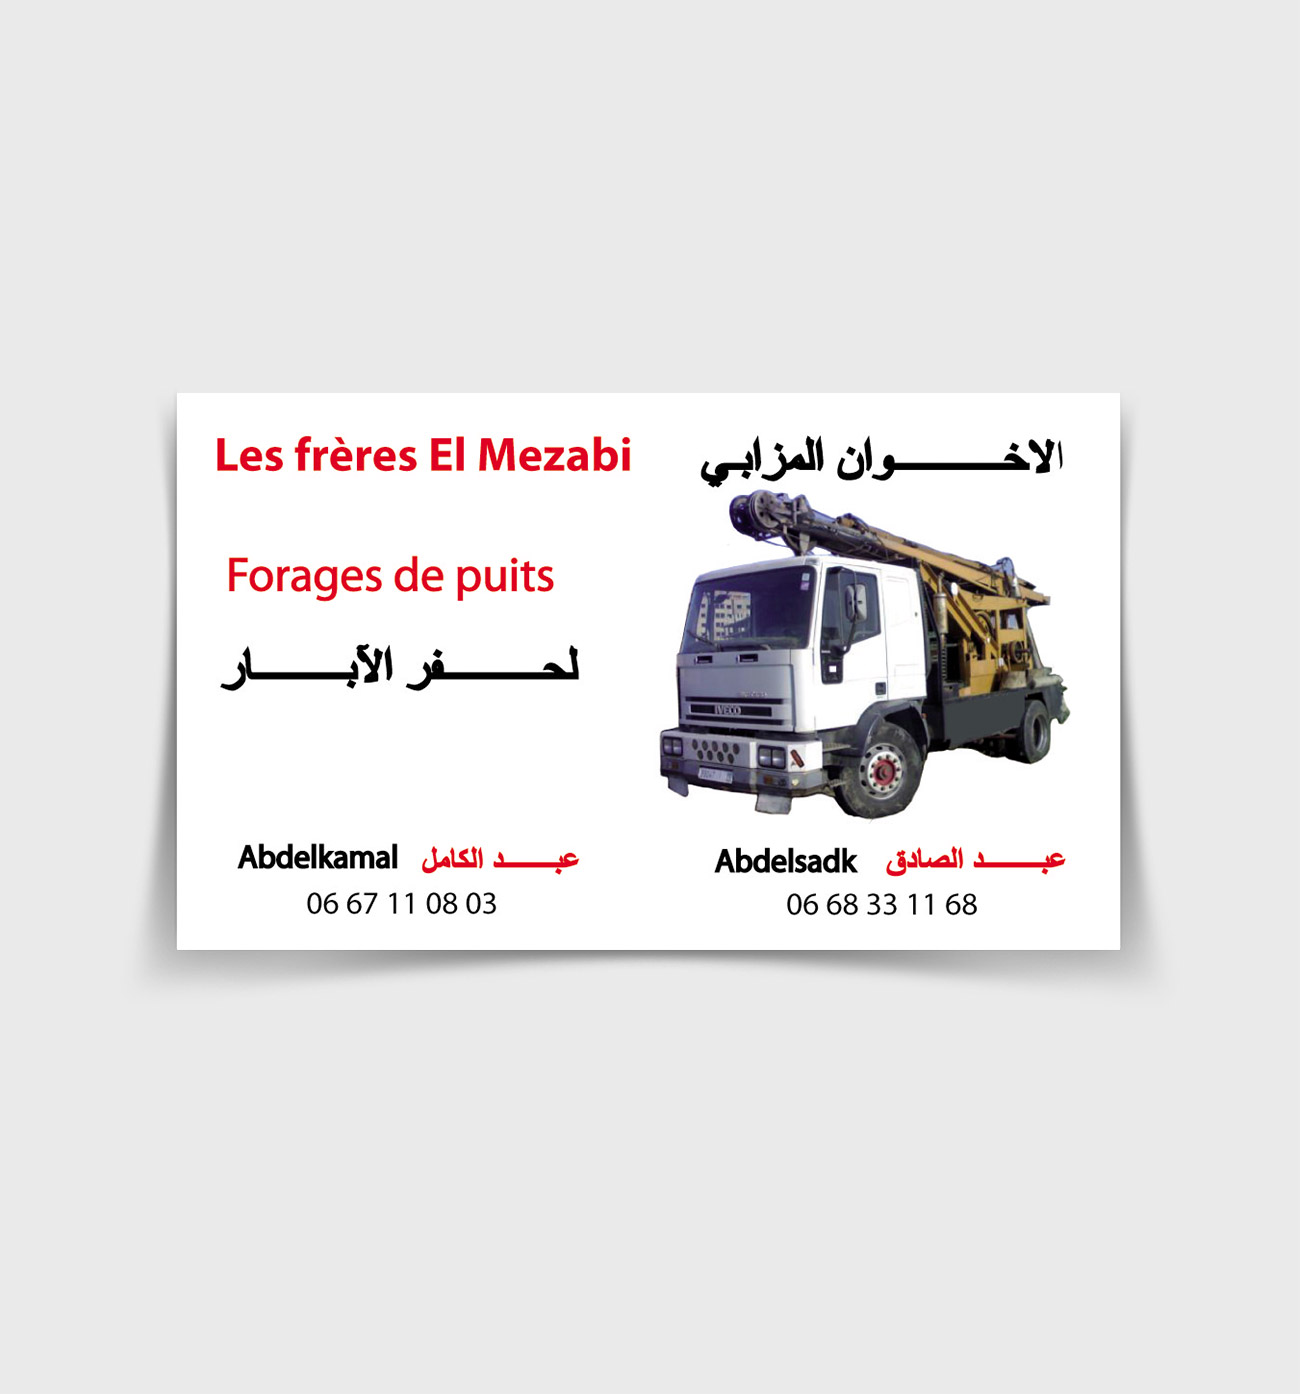 Les freres El Mezabi Forages de puits